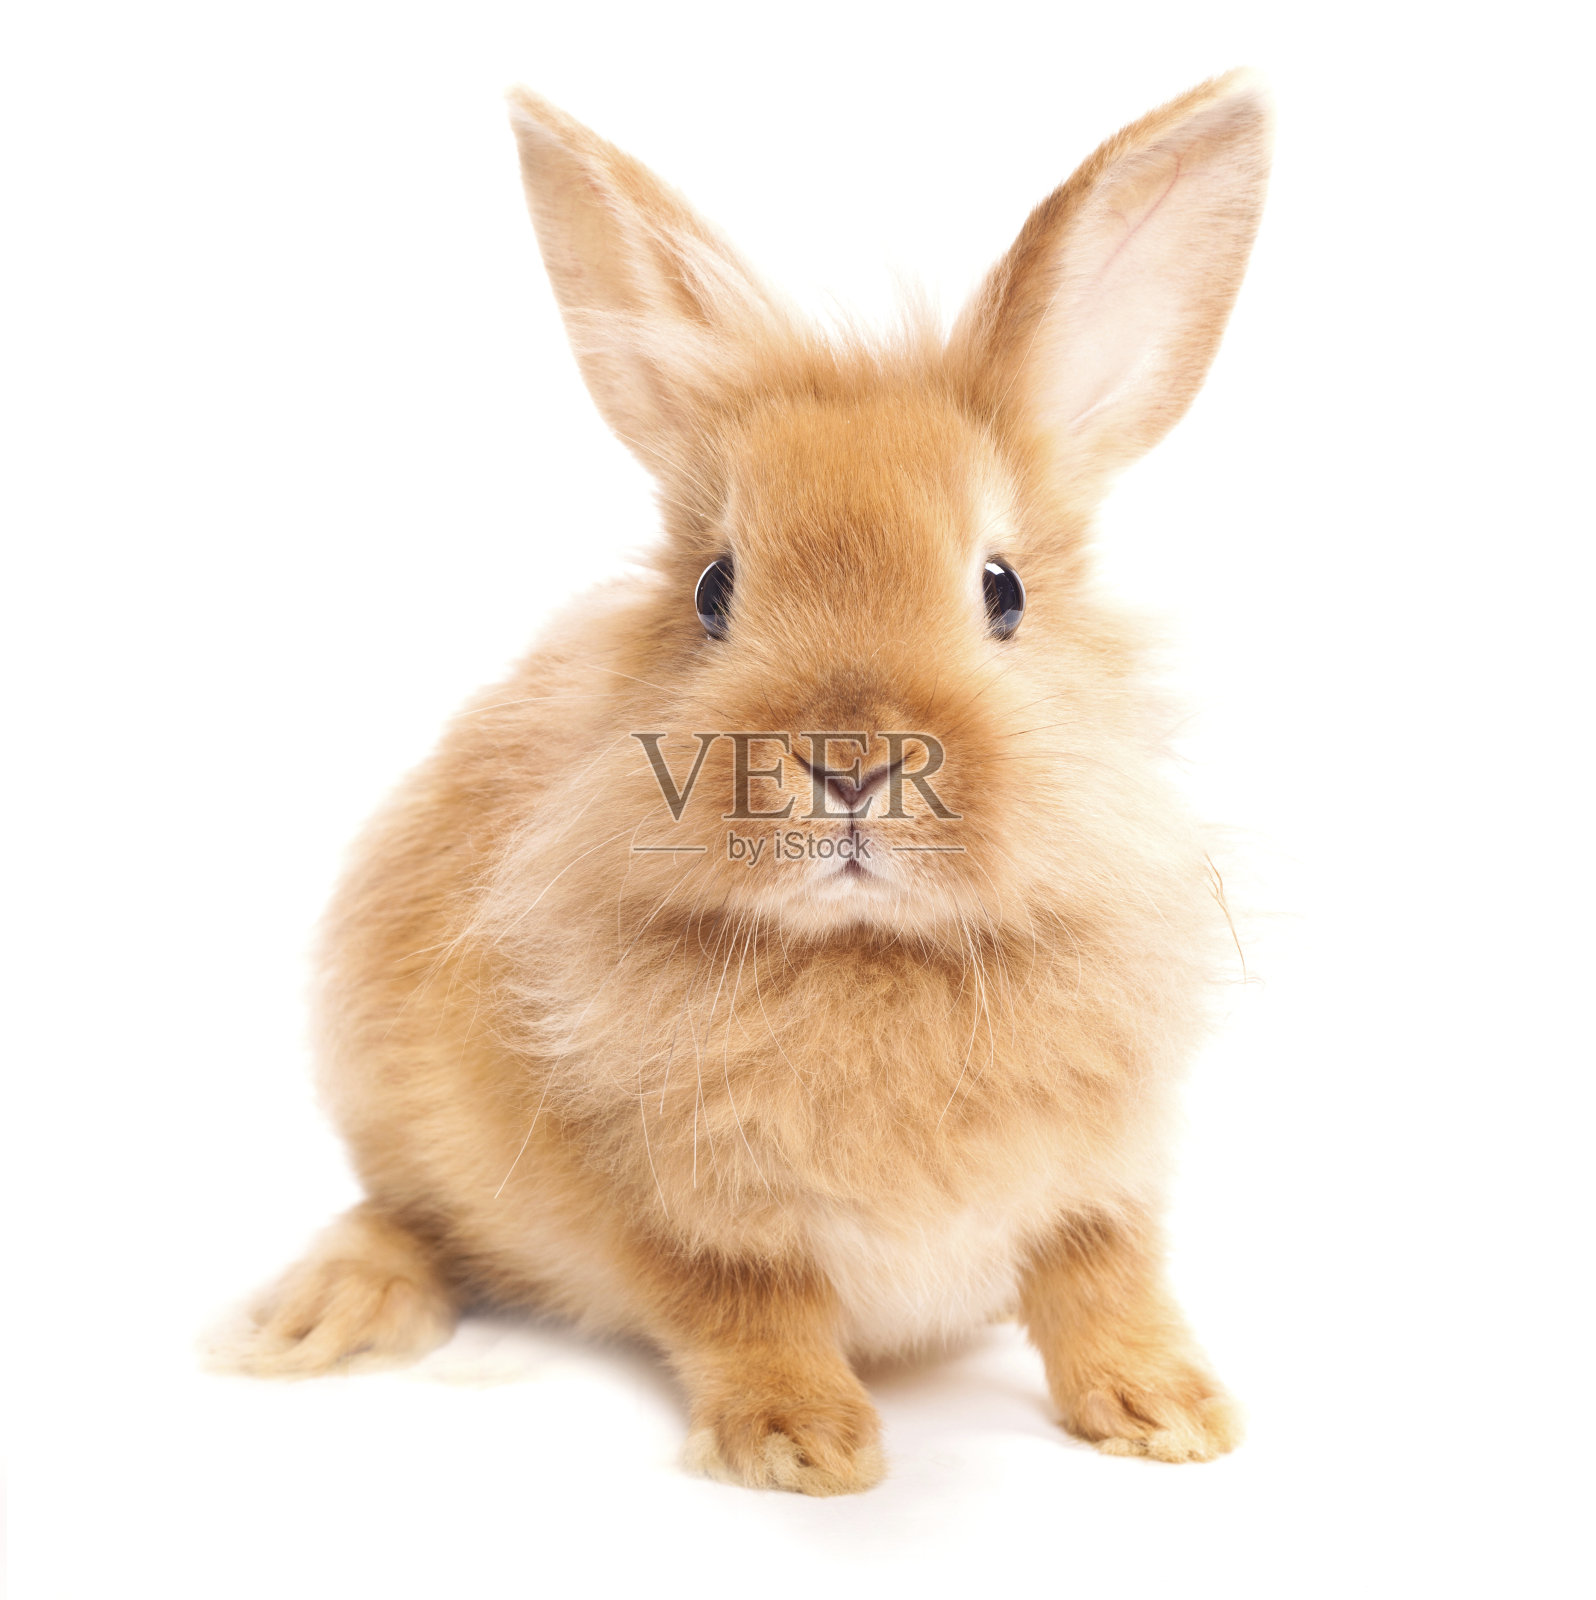 一只棕色毛茸茸的兔子映衬着白色的背景照片摄影图片